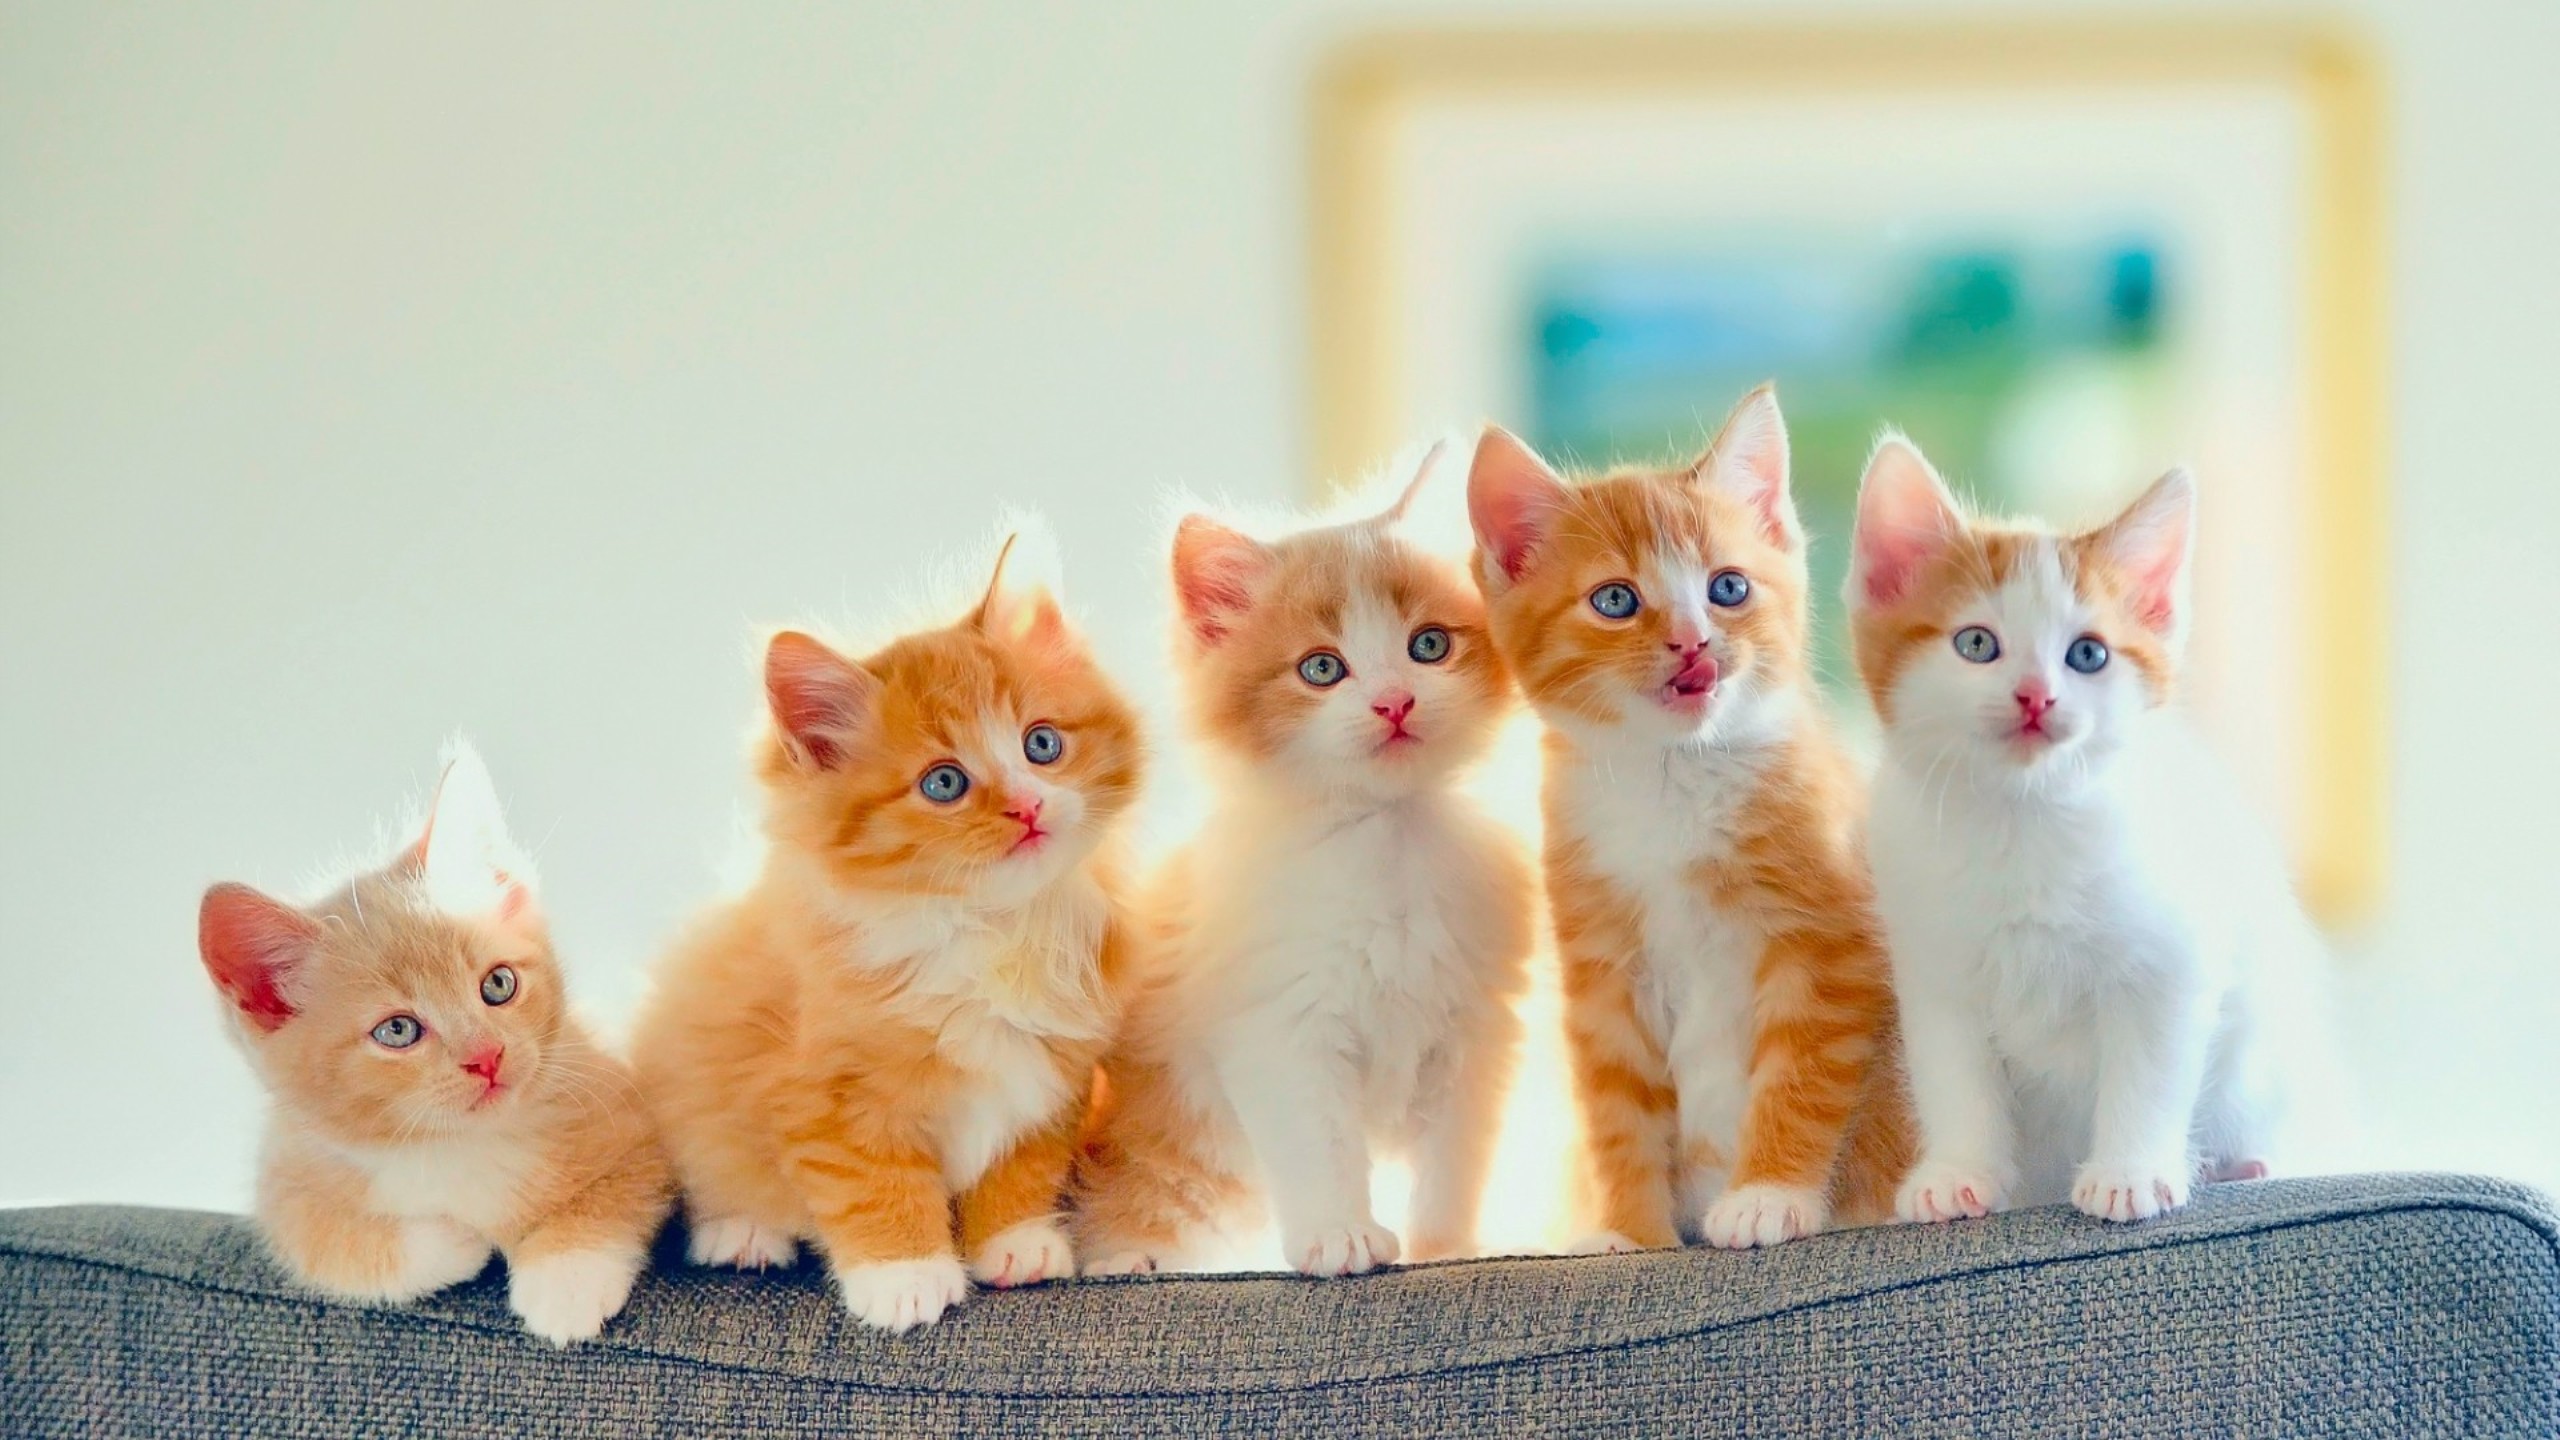 Cute Kittens HD Wallpaper